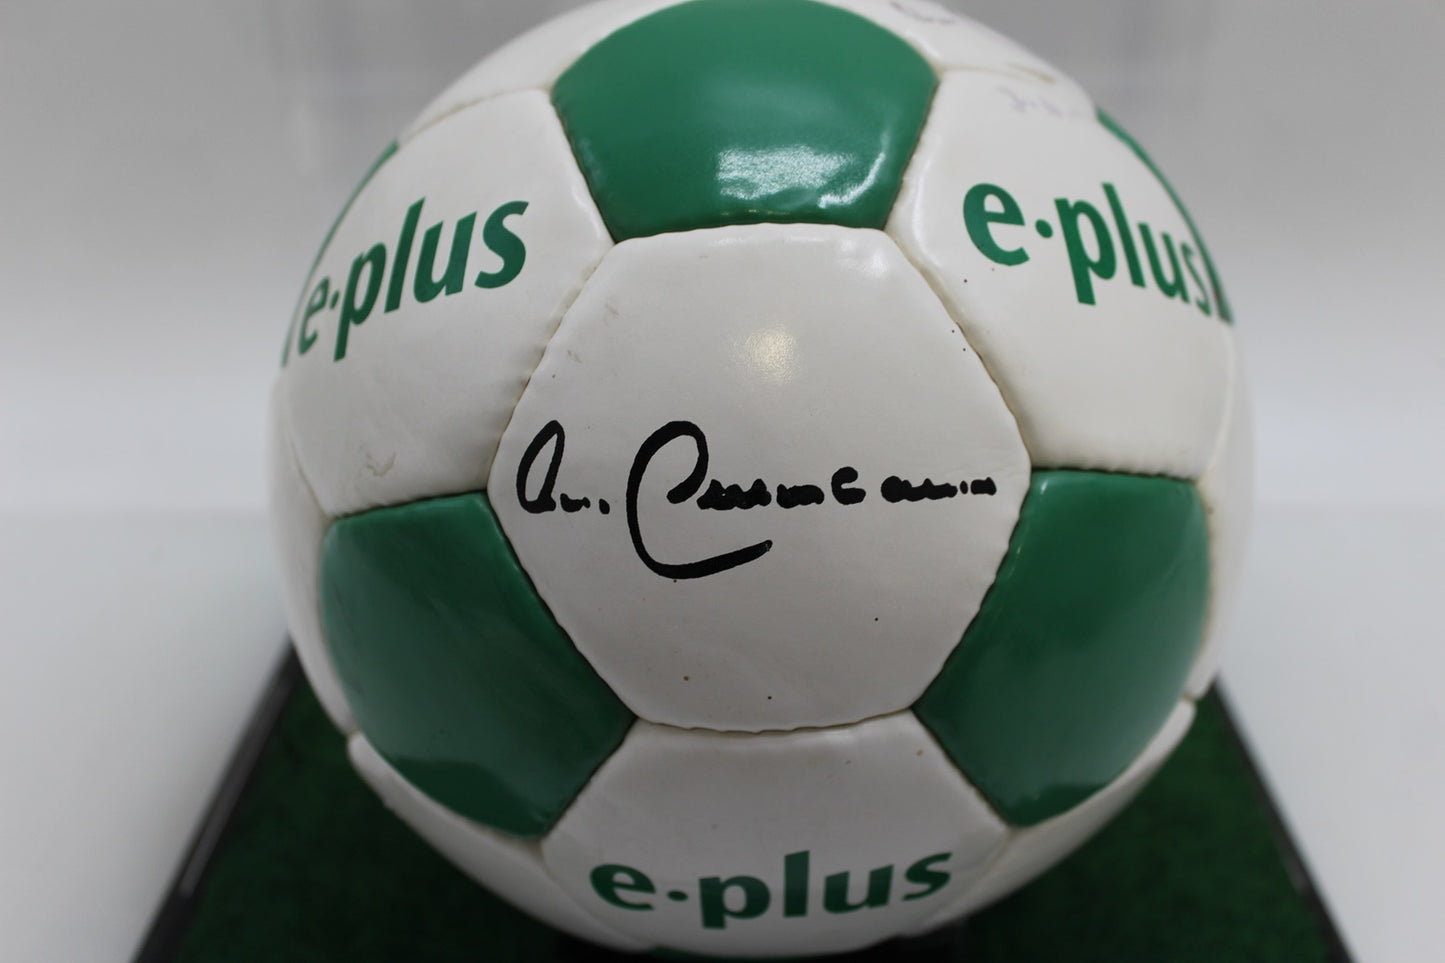 Fußball Franz Beckenbauer signiert mit Widmung Kaiser Neu COA Autogramm